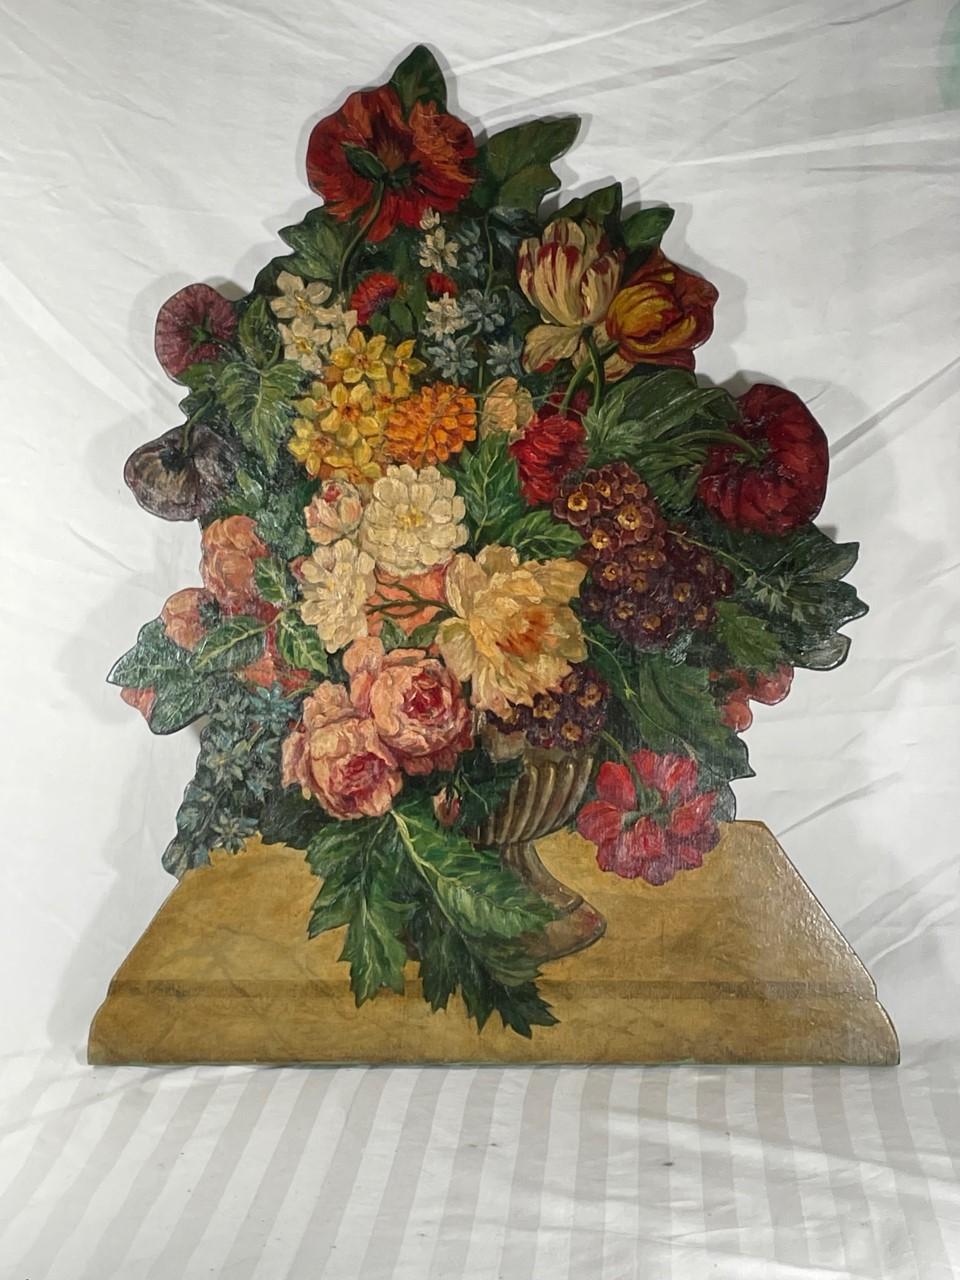 Antike englische bemalte Holzkaminscheibe Blumenkorb Dummy Board

Im 18. und 19. Jahrhundert waren Kaminschirme aus Blindplatten vor allem bei den Engländern in Mode. Dieser dekorative Blumenkorb aus der Jahrhundertwende ist sehr kunstvoll auf Holz